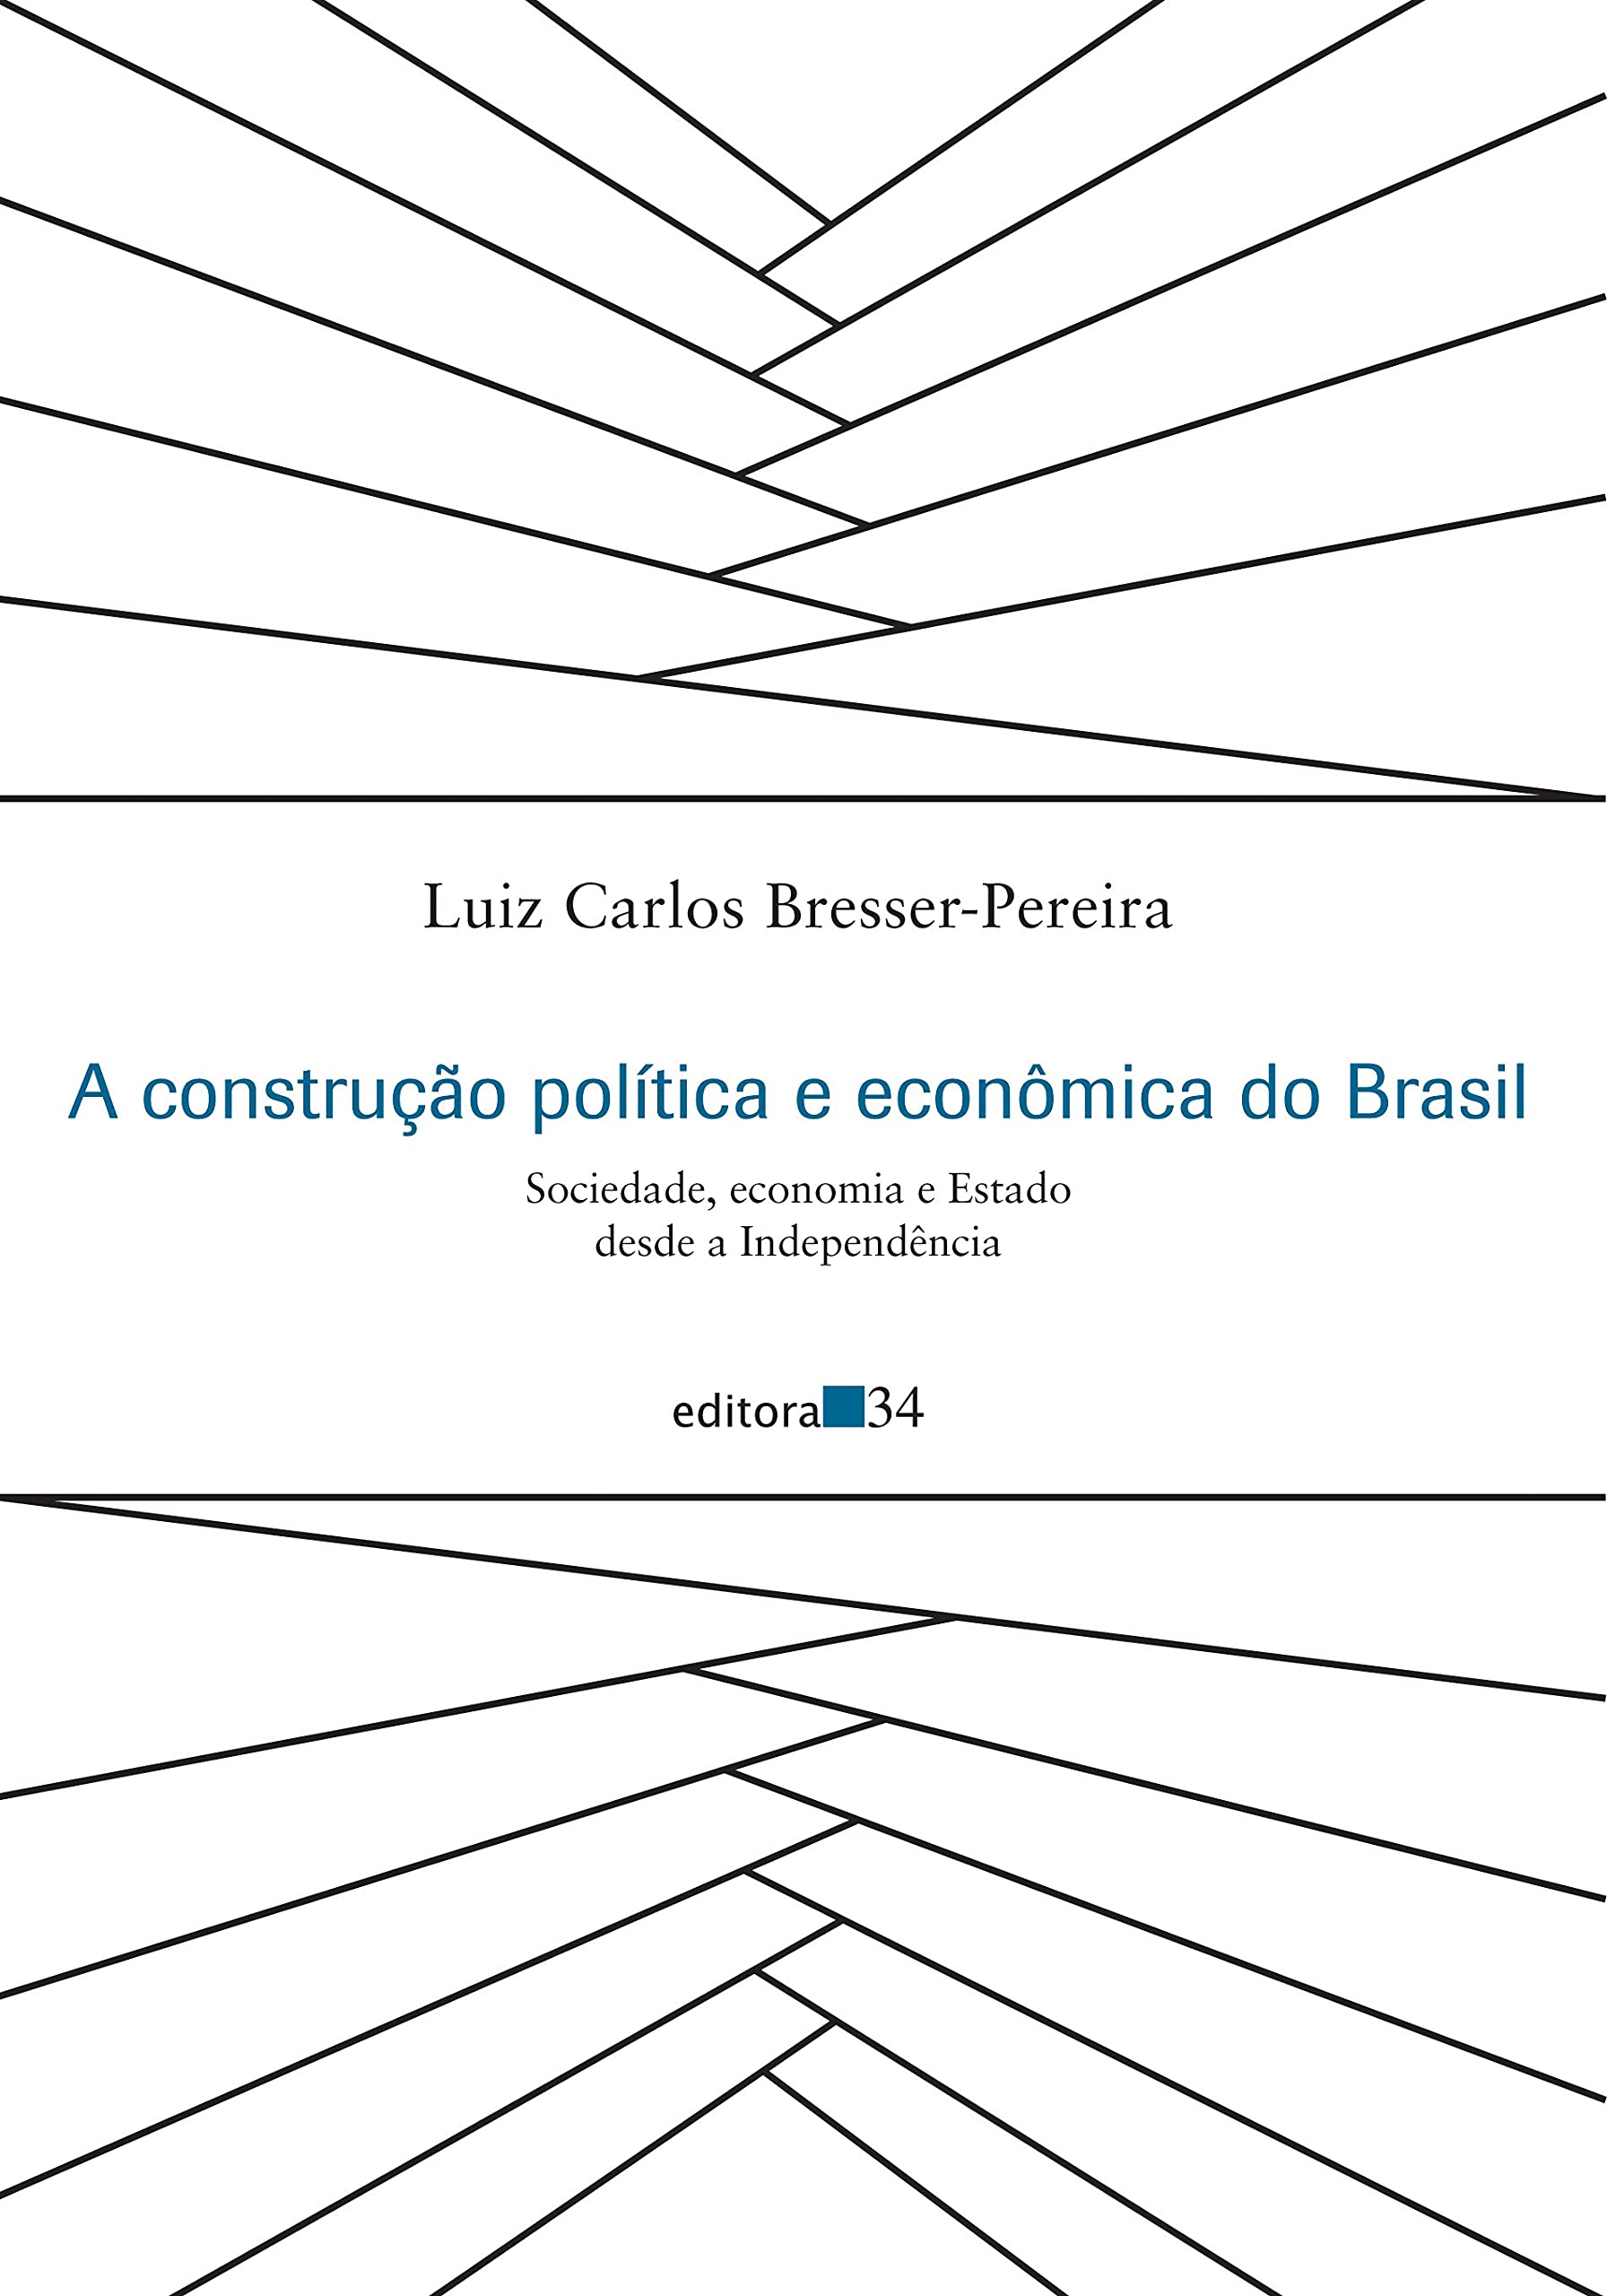 A construção política e econômica do Brasil - Sociedade, economia e Estado desde a Independência, livro de Luiz Carlos Bresser-Pereira